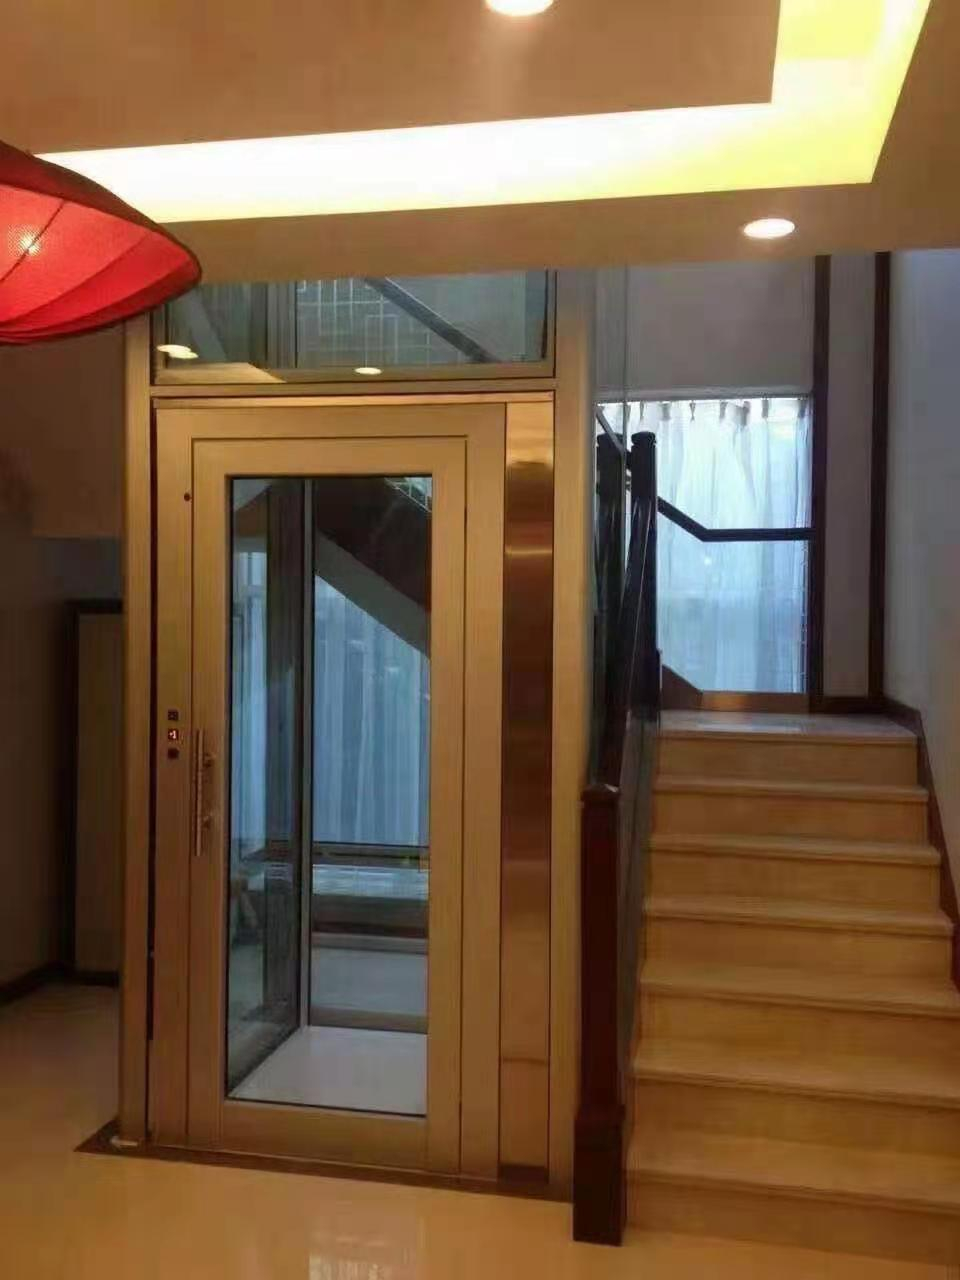 五层小型曳引观光家用别墅电梯-手拉门-背包式电梯